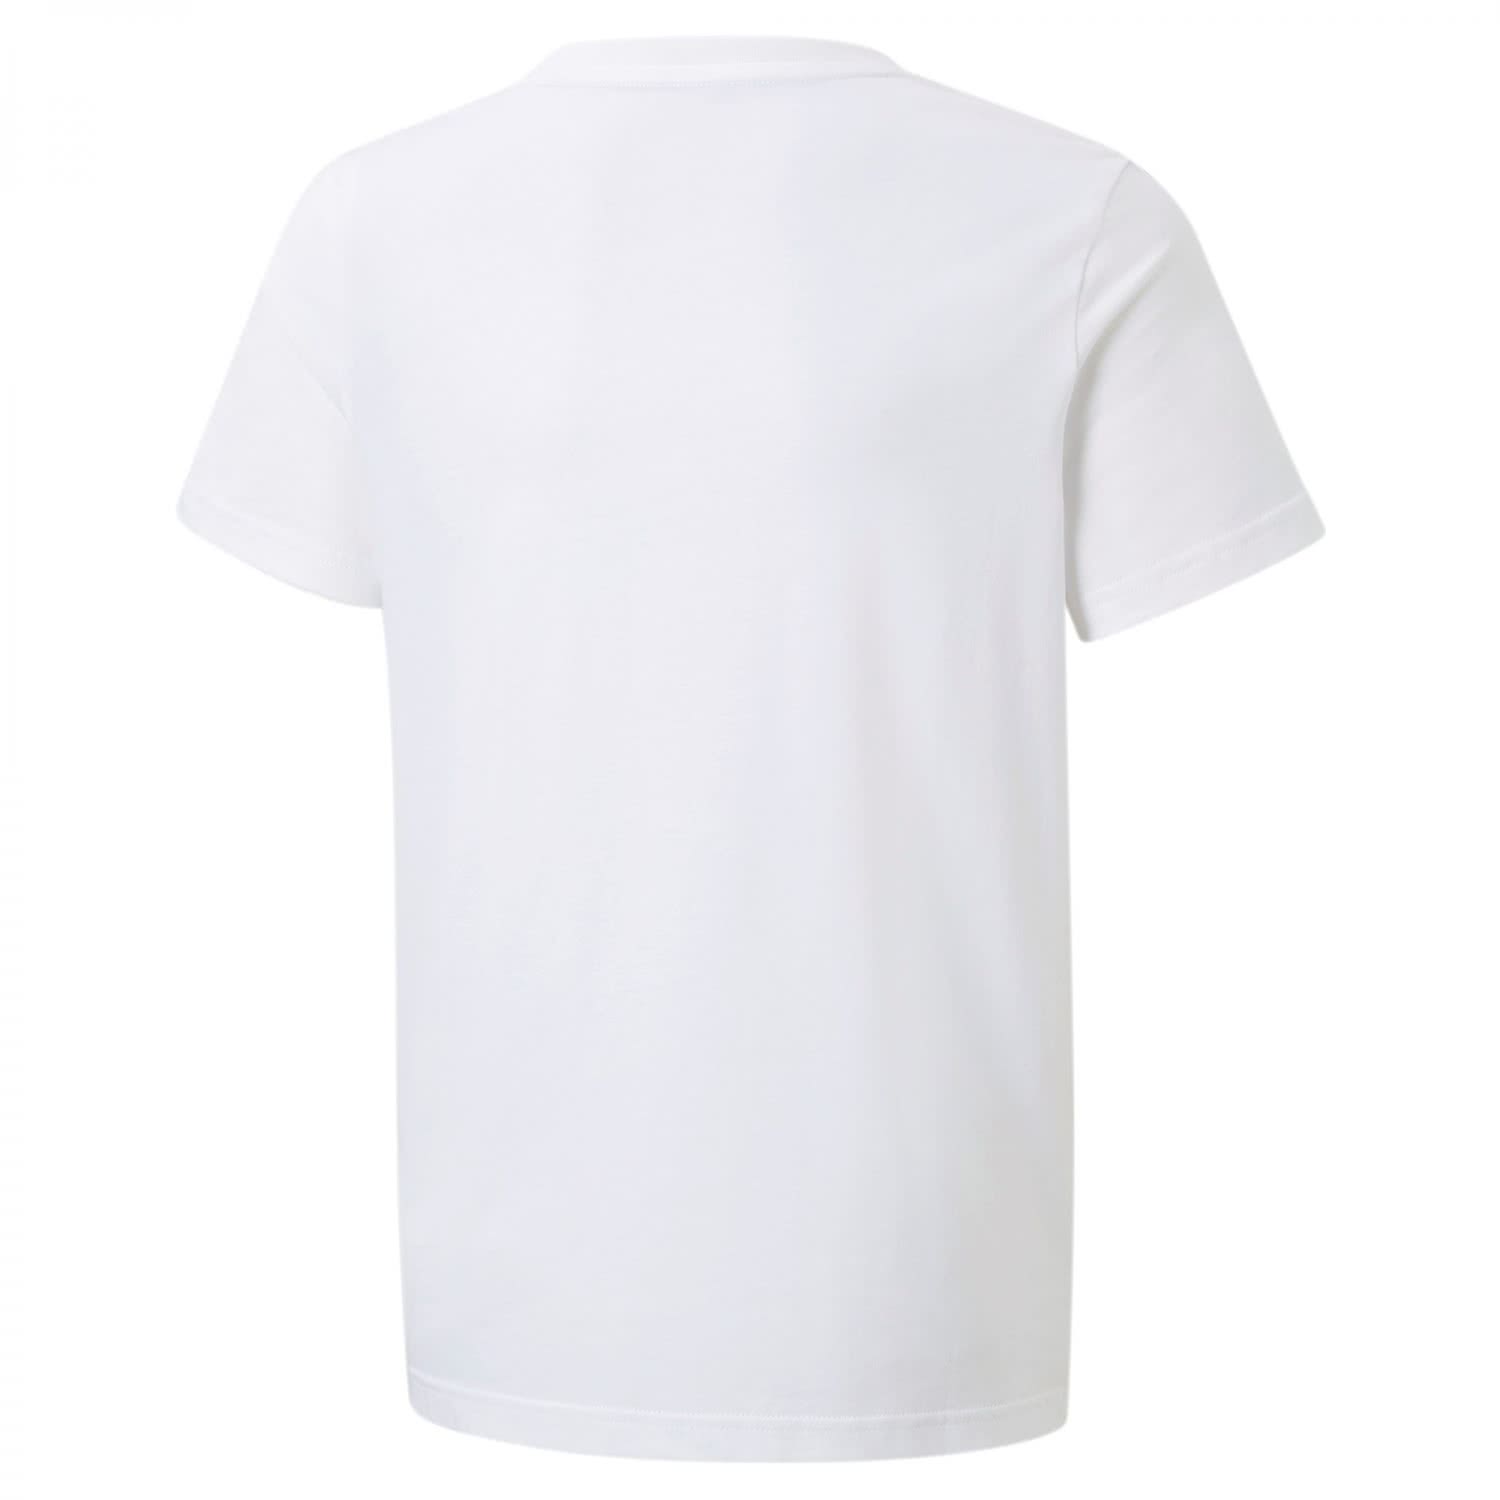 Puma Jungen T-Shirt ESS+ Tape Tee 847300 | eBay